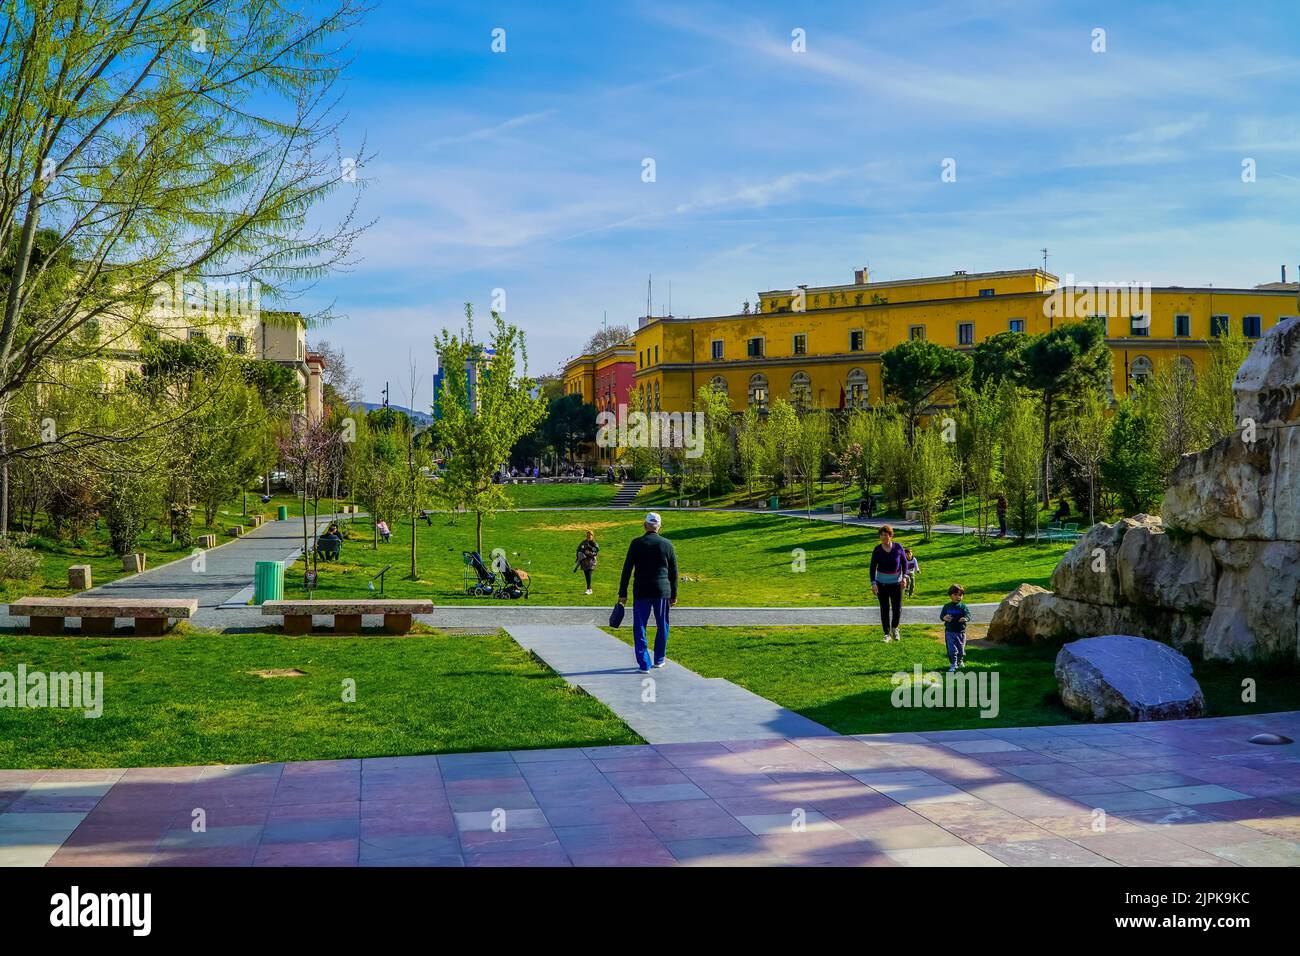 Eine wunderschöne Aussicht auf Menschen, die in einem immergrünen Park neben dem Skanderbeg-Platz in Tirana, Albanien, spazieren gehen Stockfoto